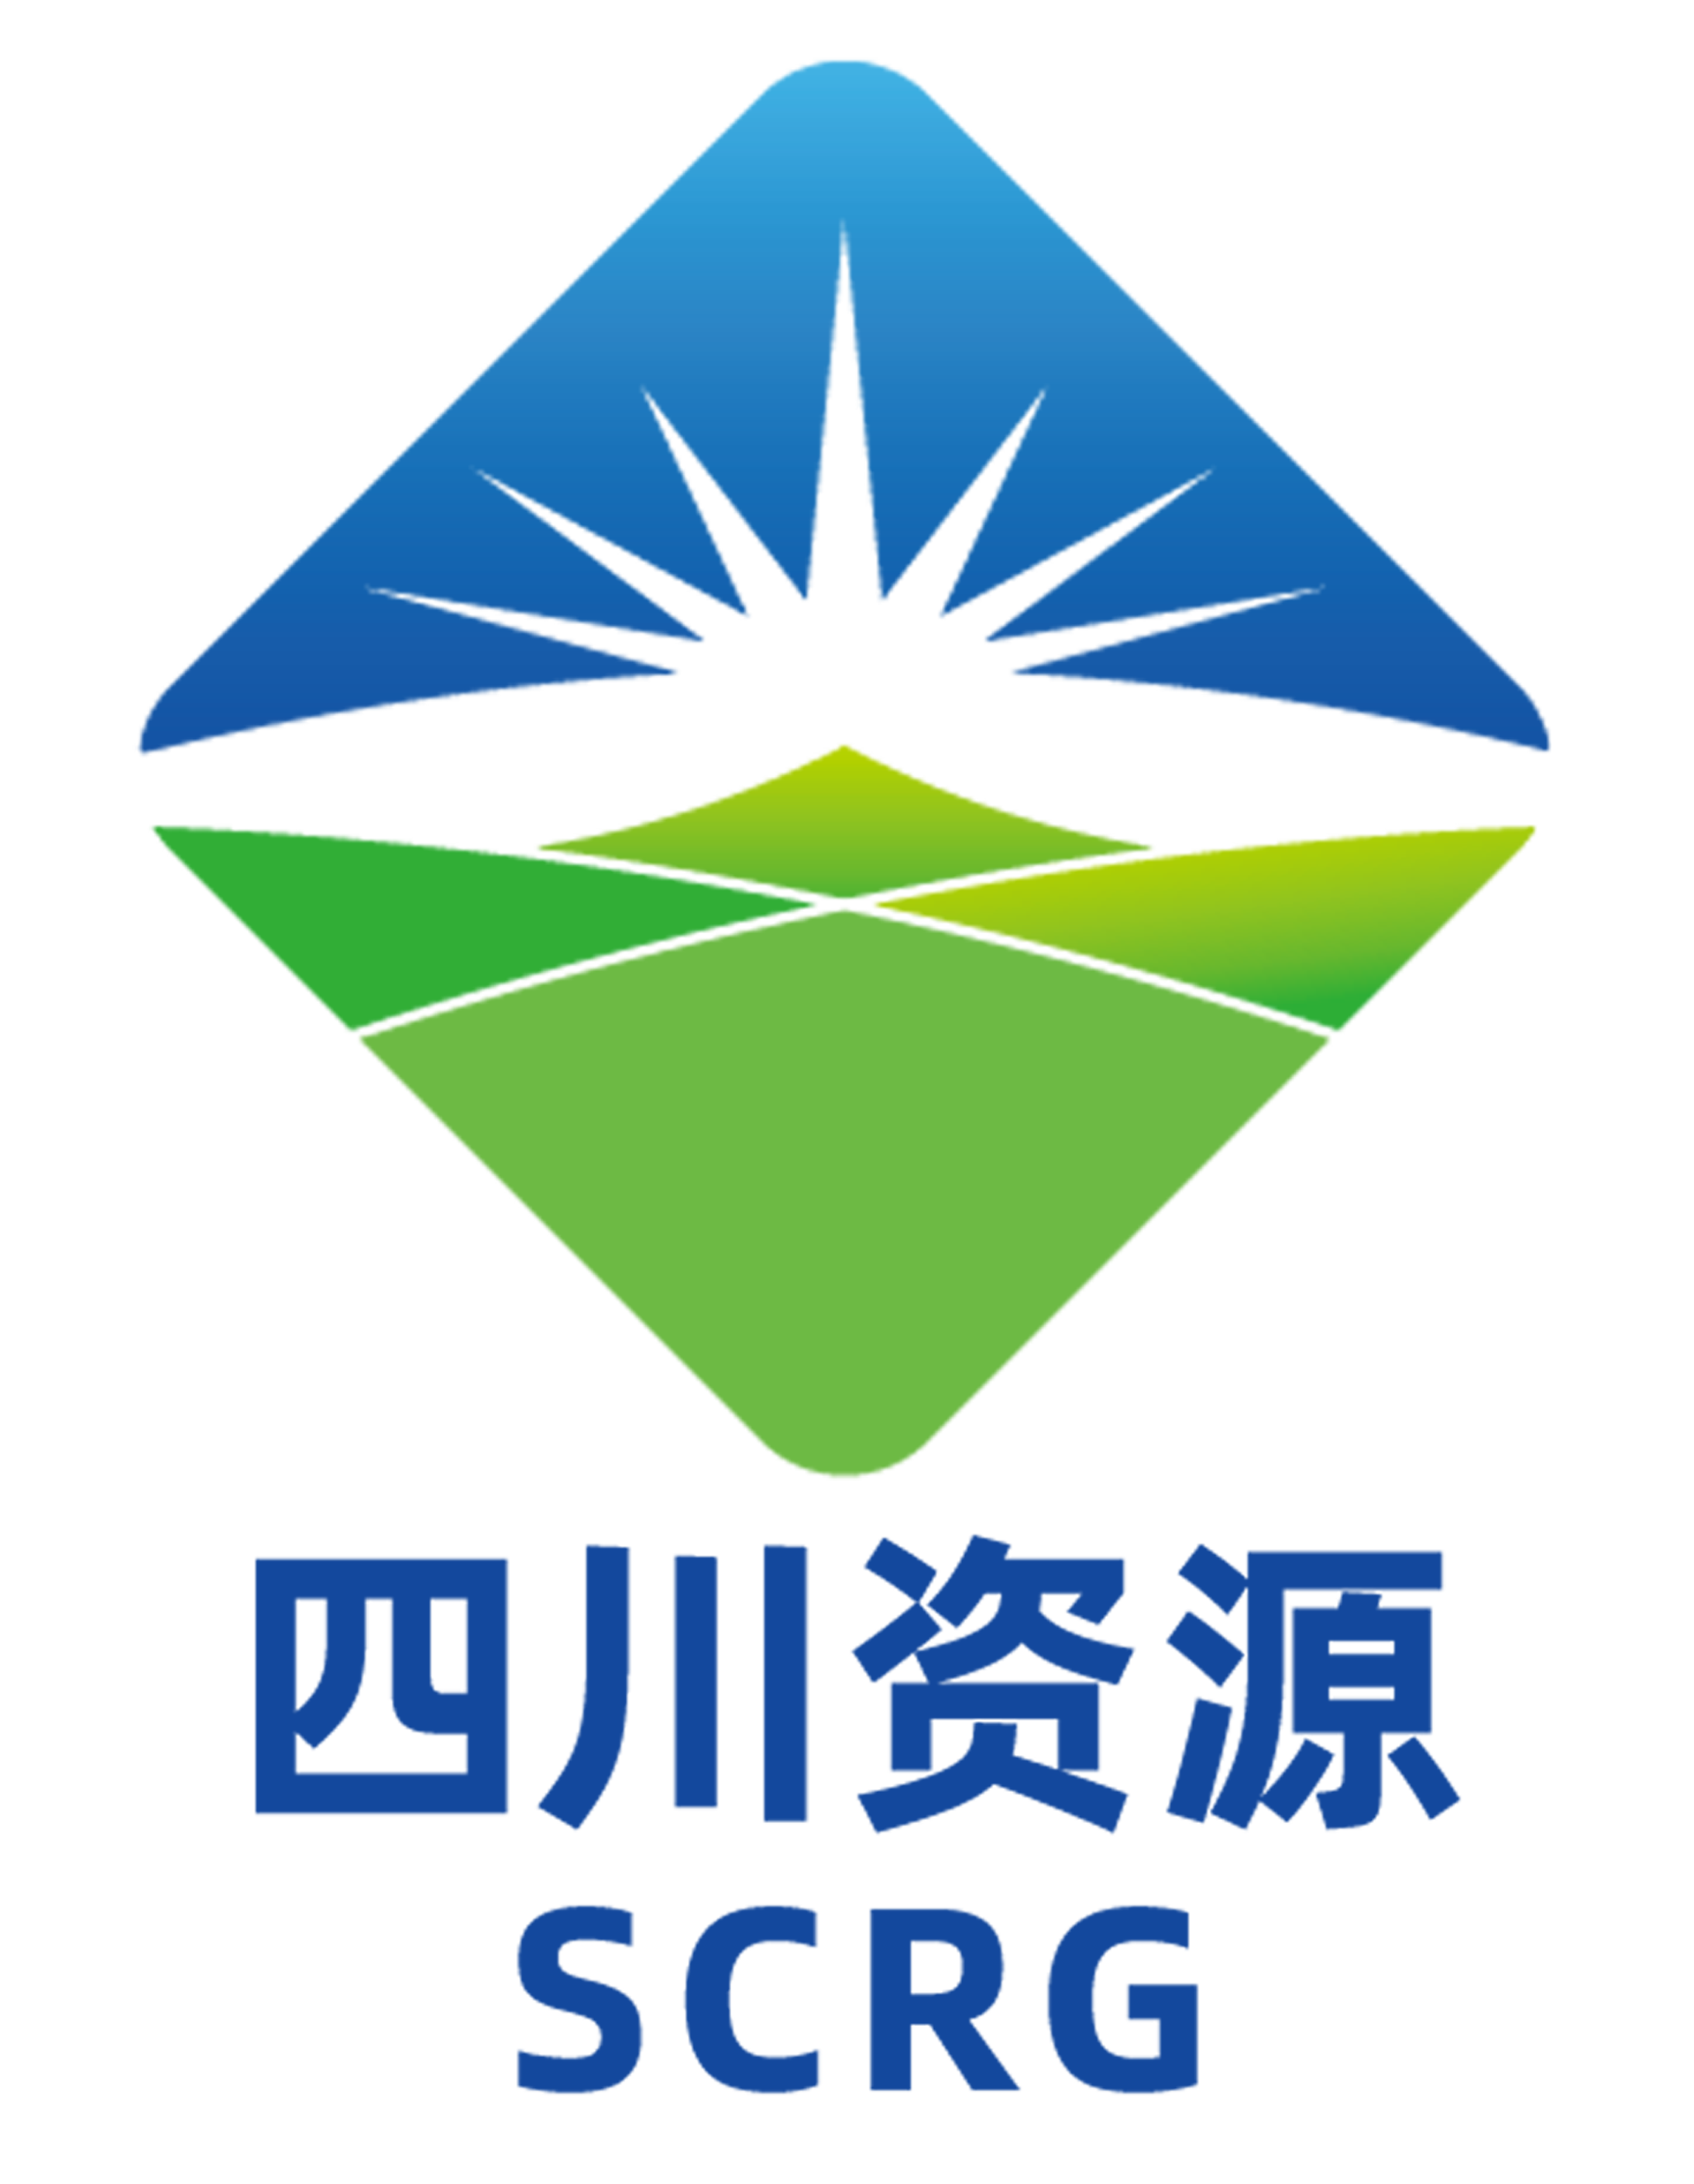 四川省自然资源投资集团有限责任公司